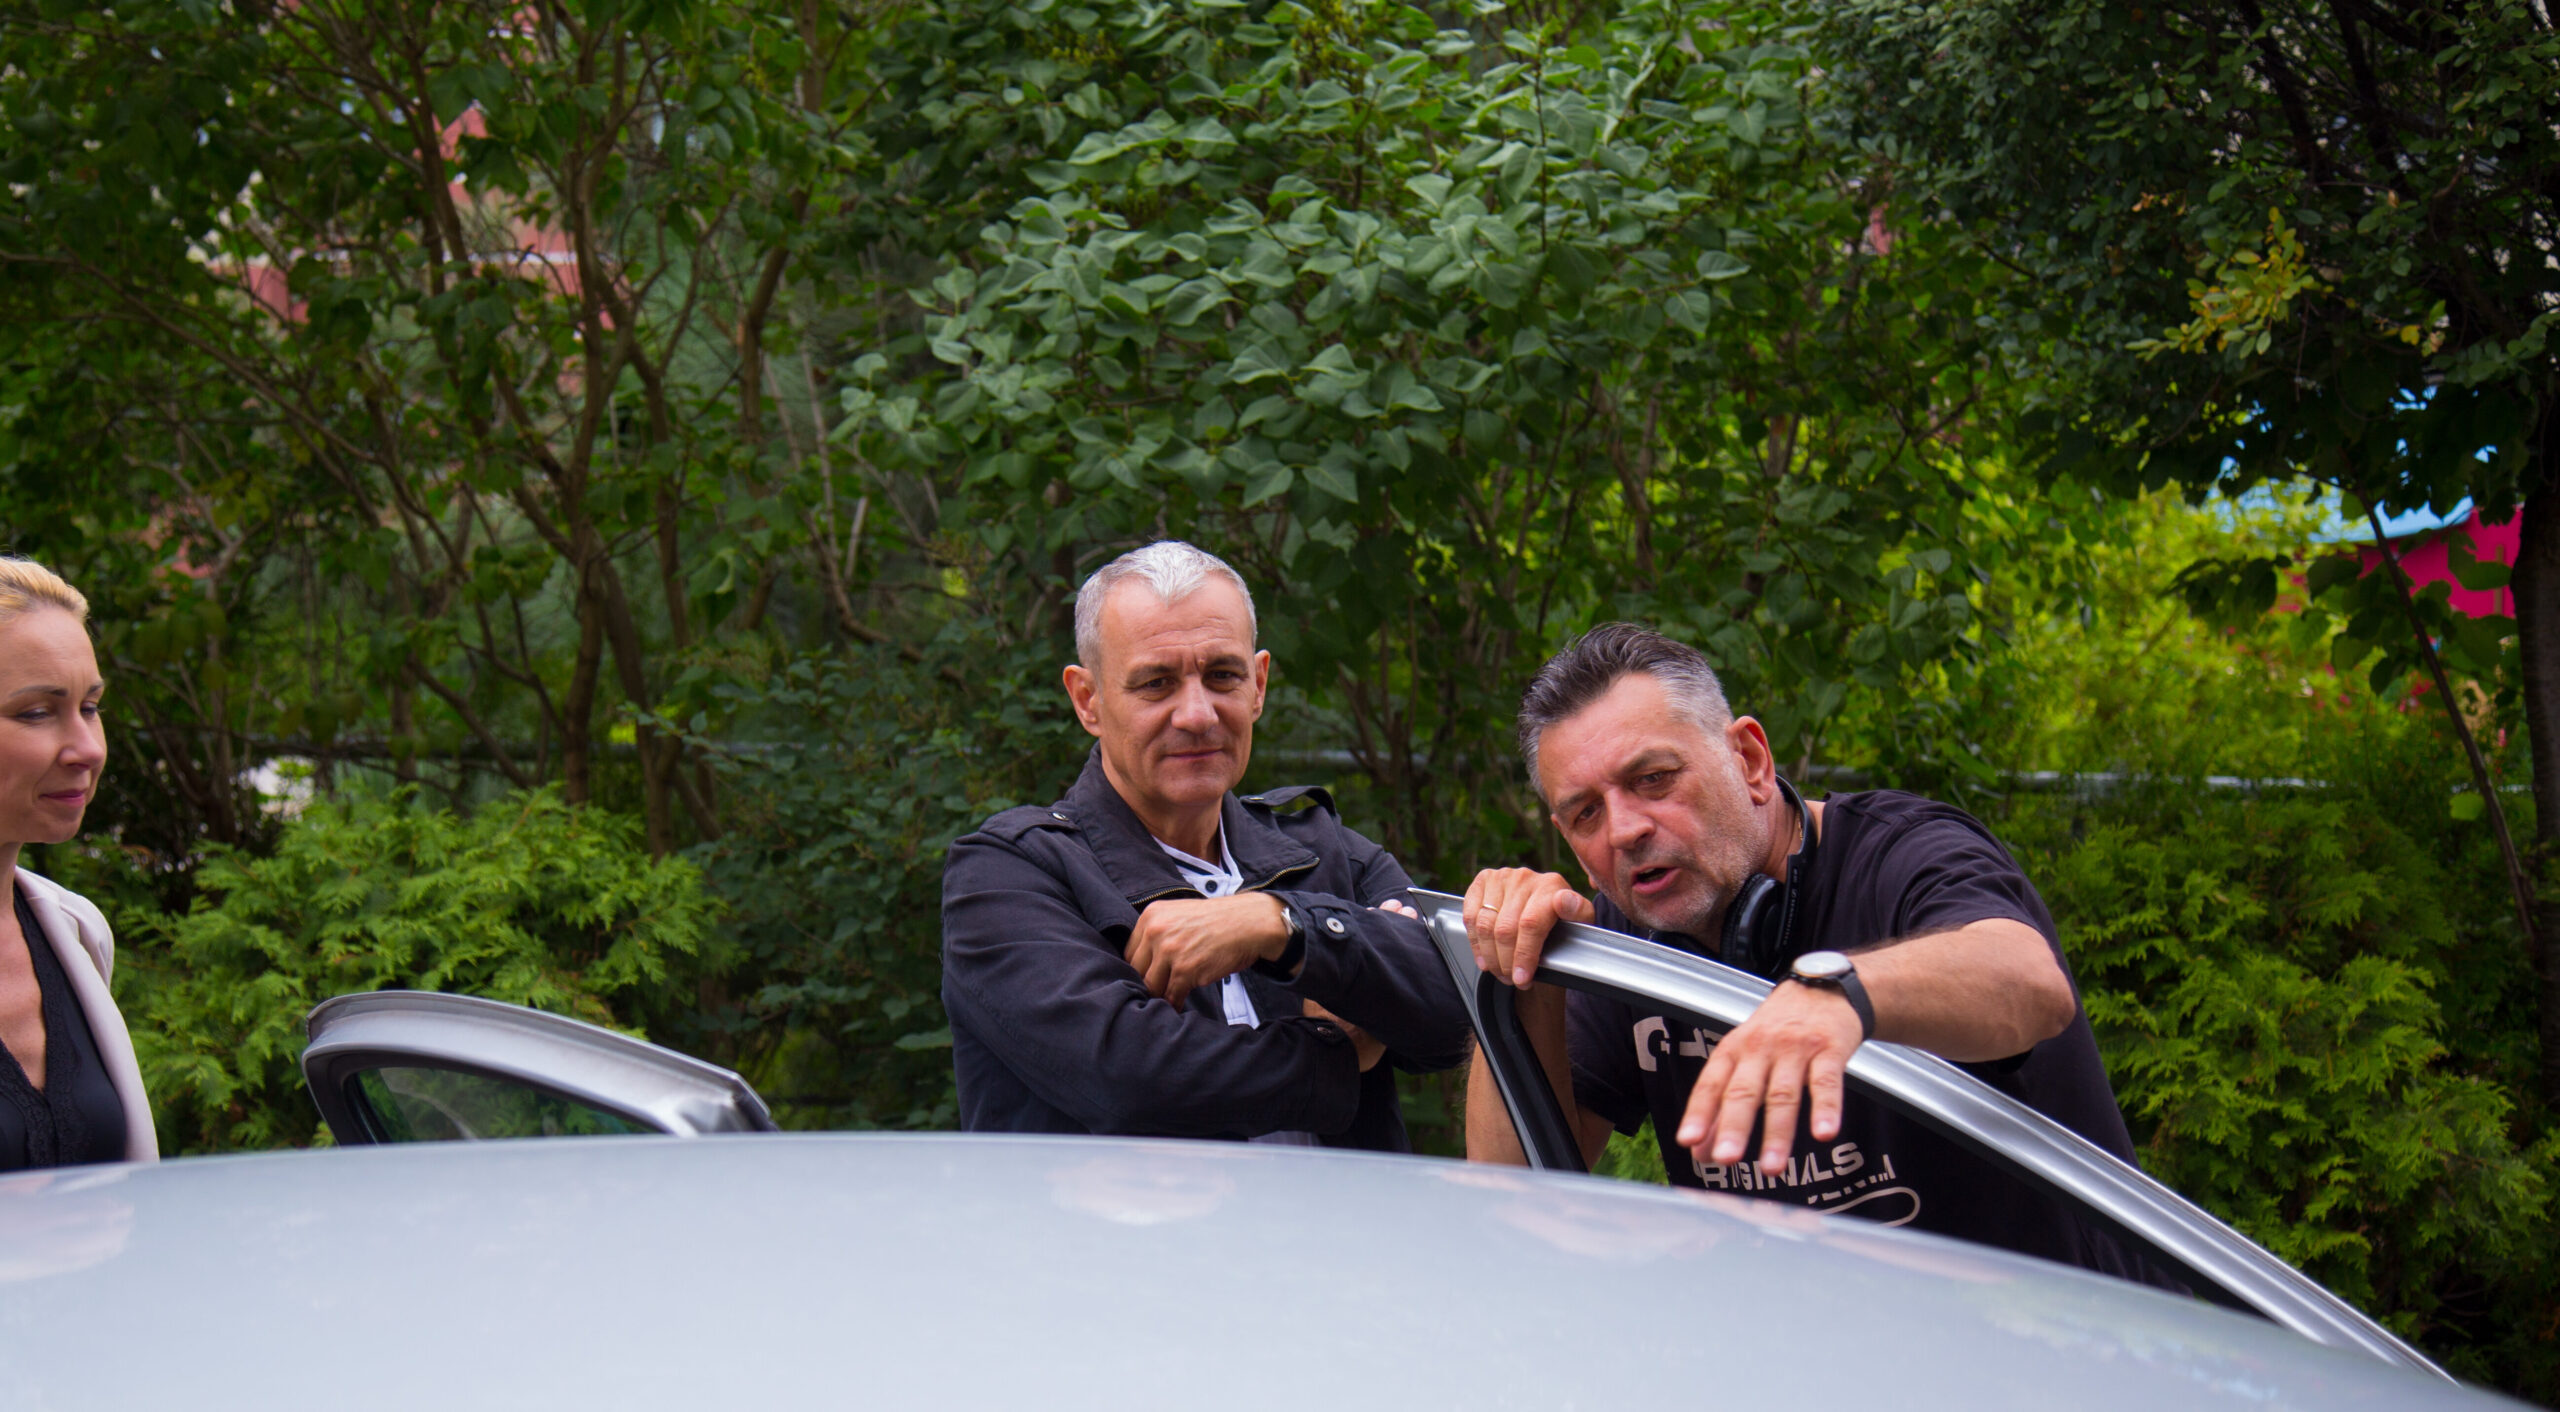 Reżyser Artur wraz z aktorem Maciejem Jackowskim ustawiają scenę przy srebrnym samochodzie.